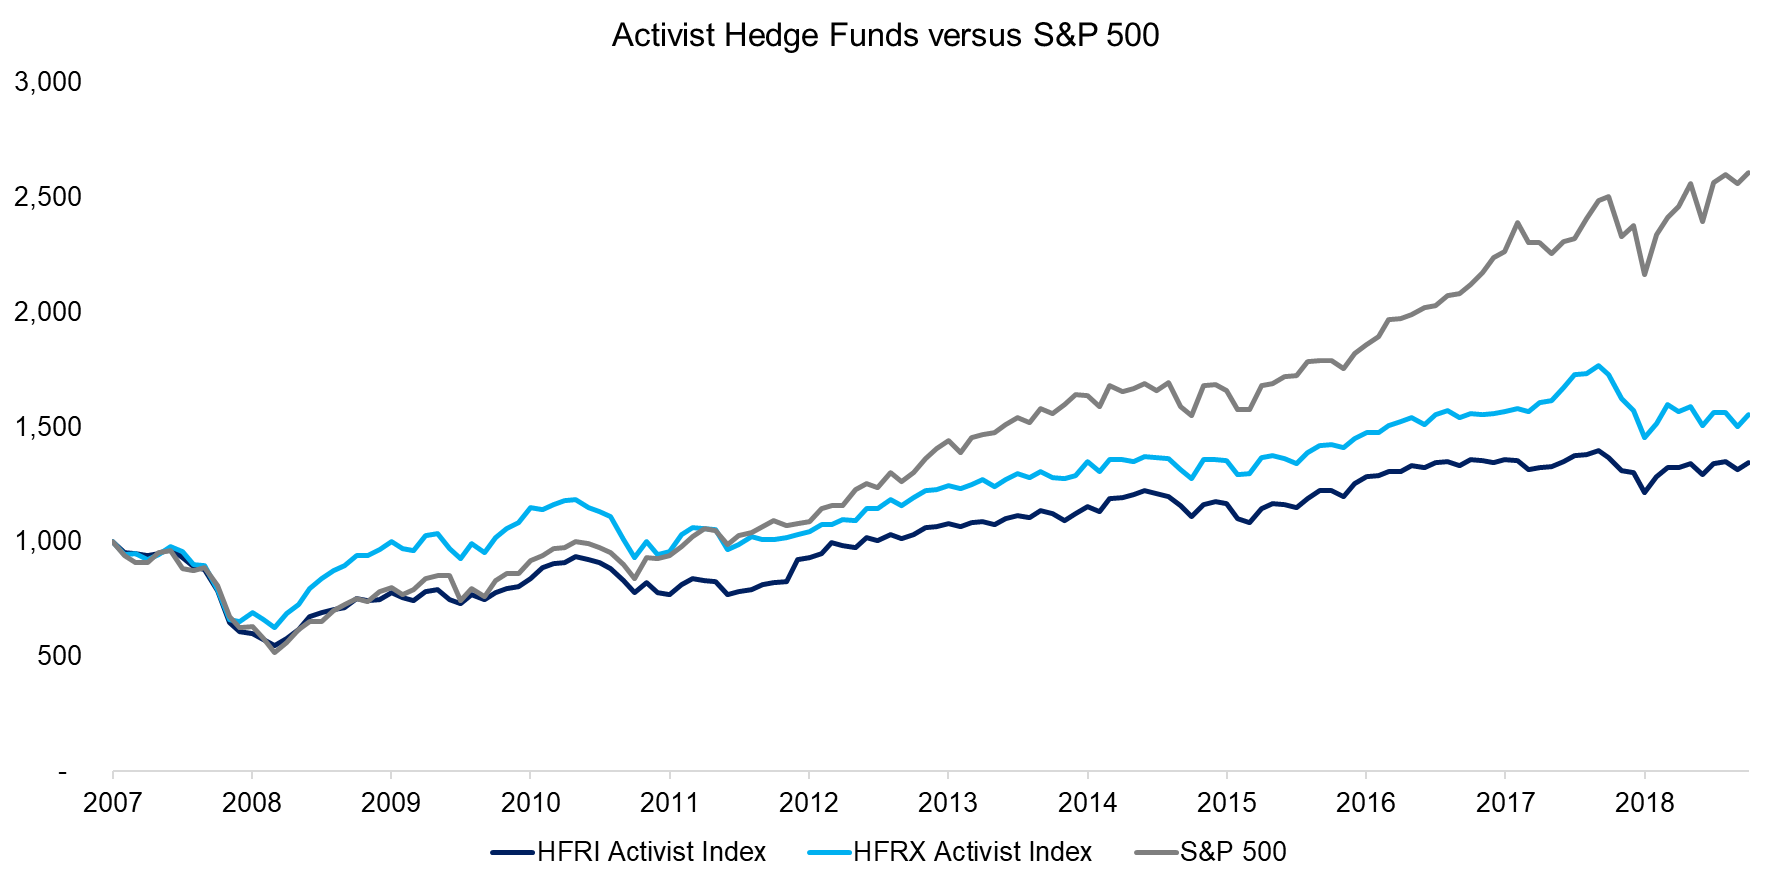 Activist Hedge Funds versus S&P 500